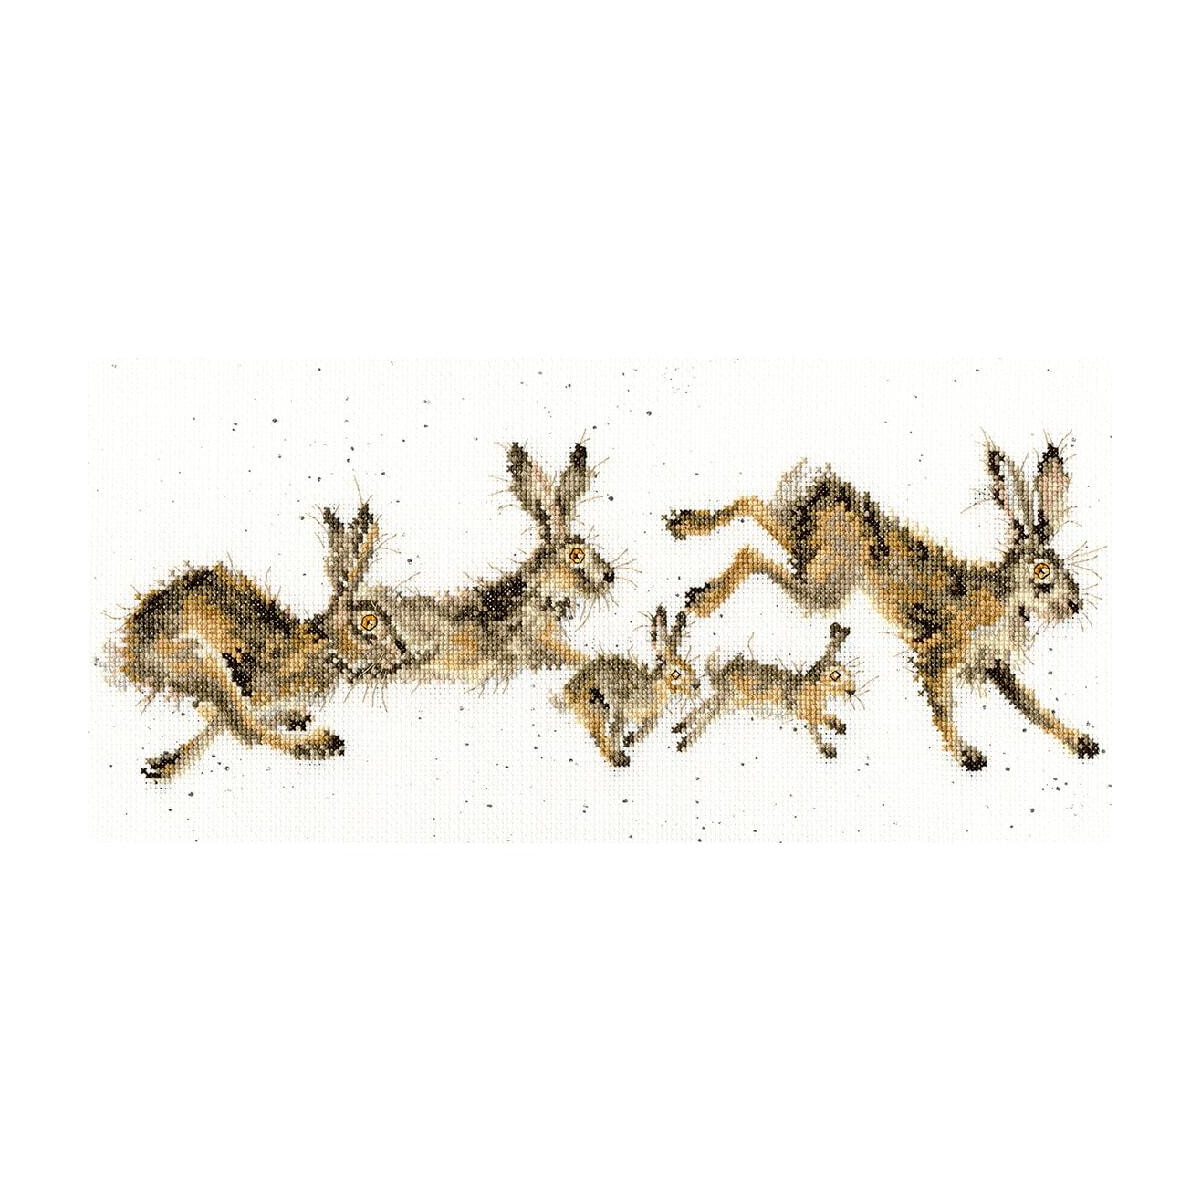 Ein handgezeichnetes Bild zeigt fünf Kaninchen in...